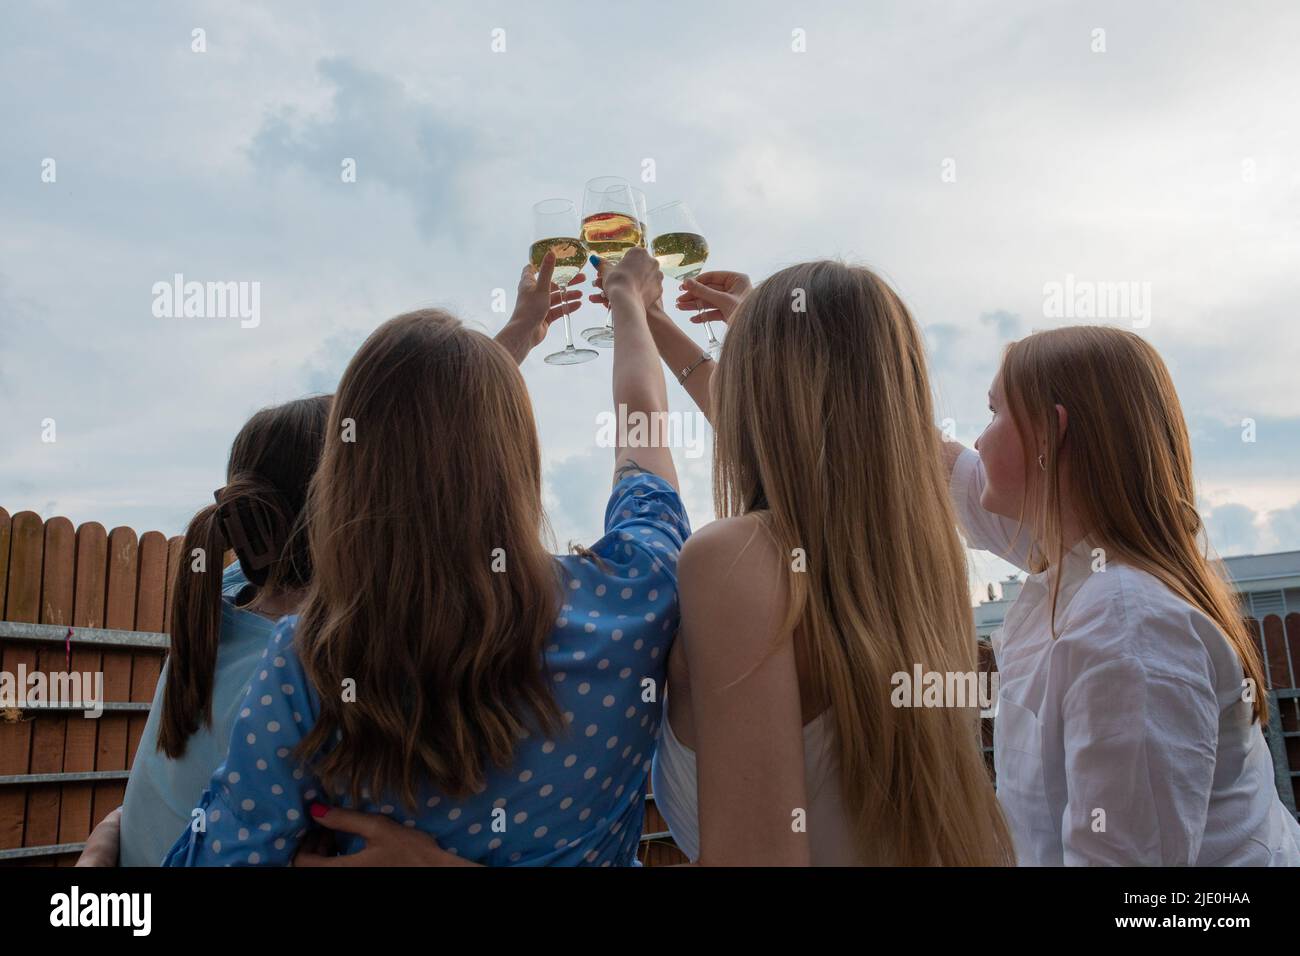 Junge Mädchen stehen zusammen, heben die Hände und klirren Gläser Weißwein Nahaufnahme Rückansicht, Himmel Hintergrund. Spaß haben und im Freien genießen Stockfoto